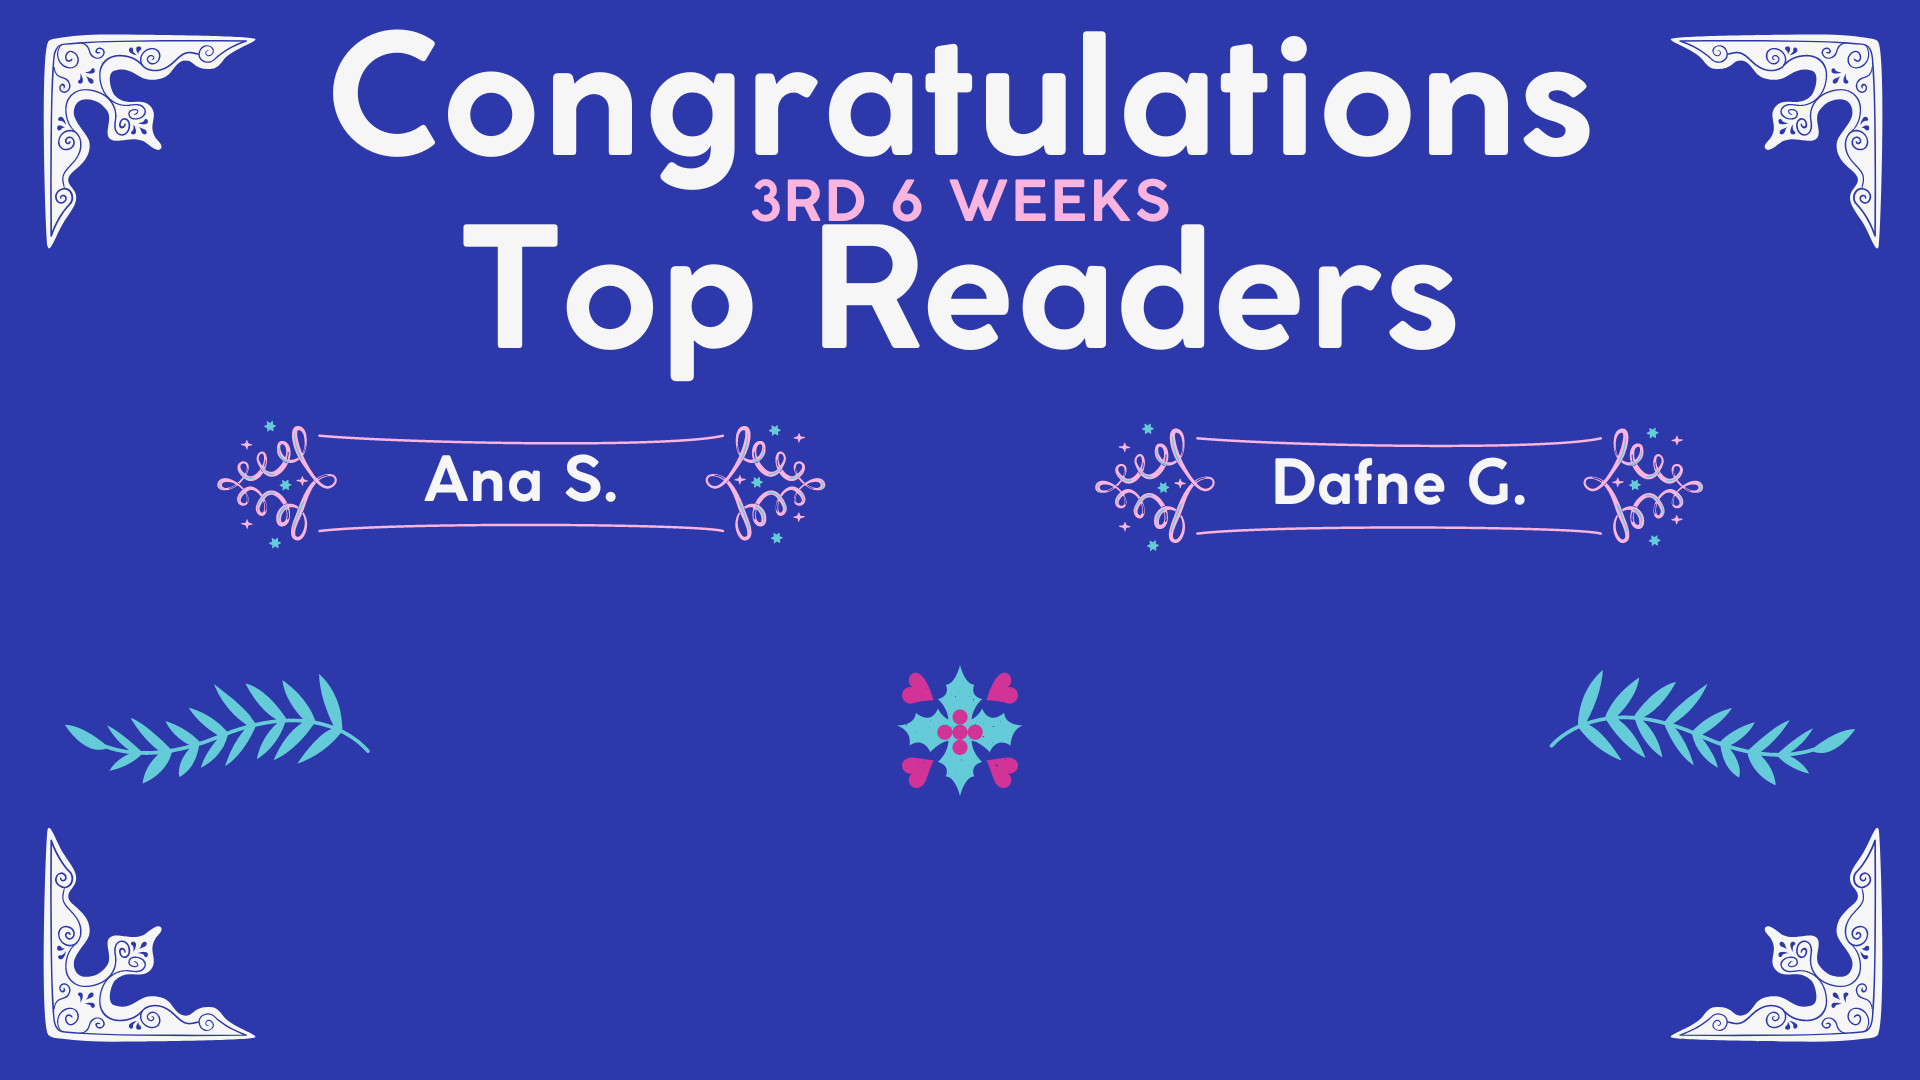 Top Readers 3rd 6 weeks